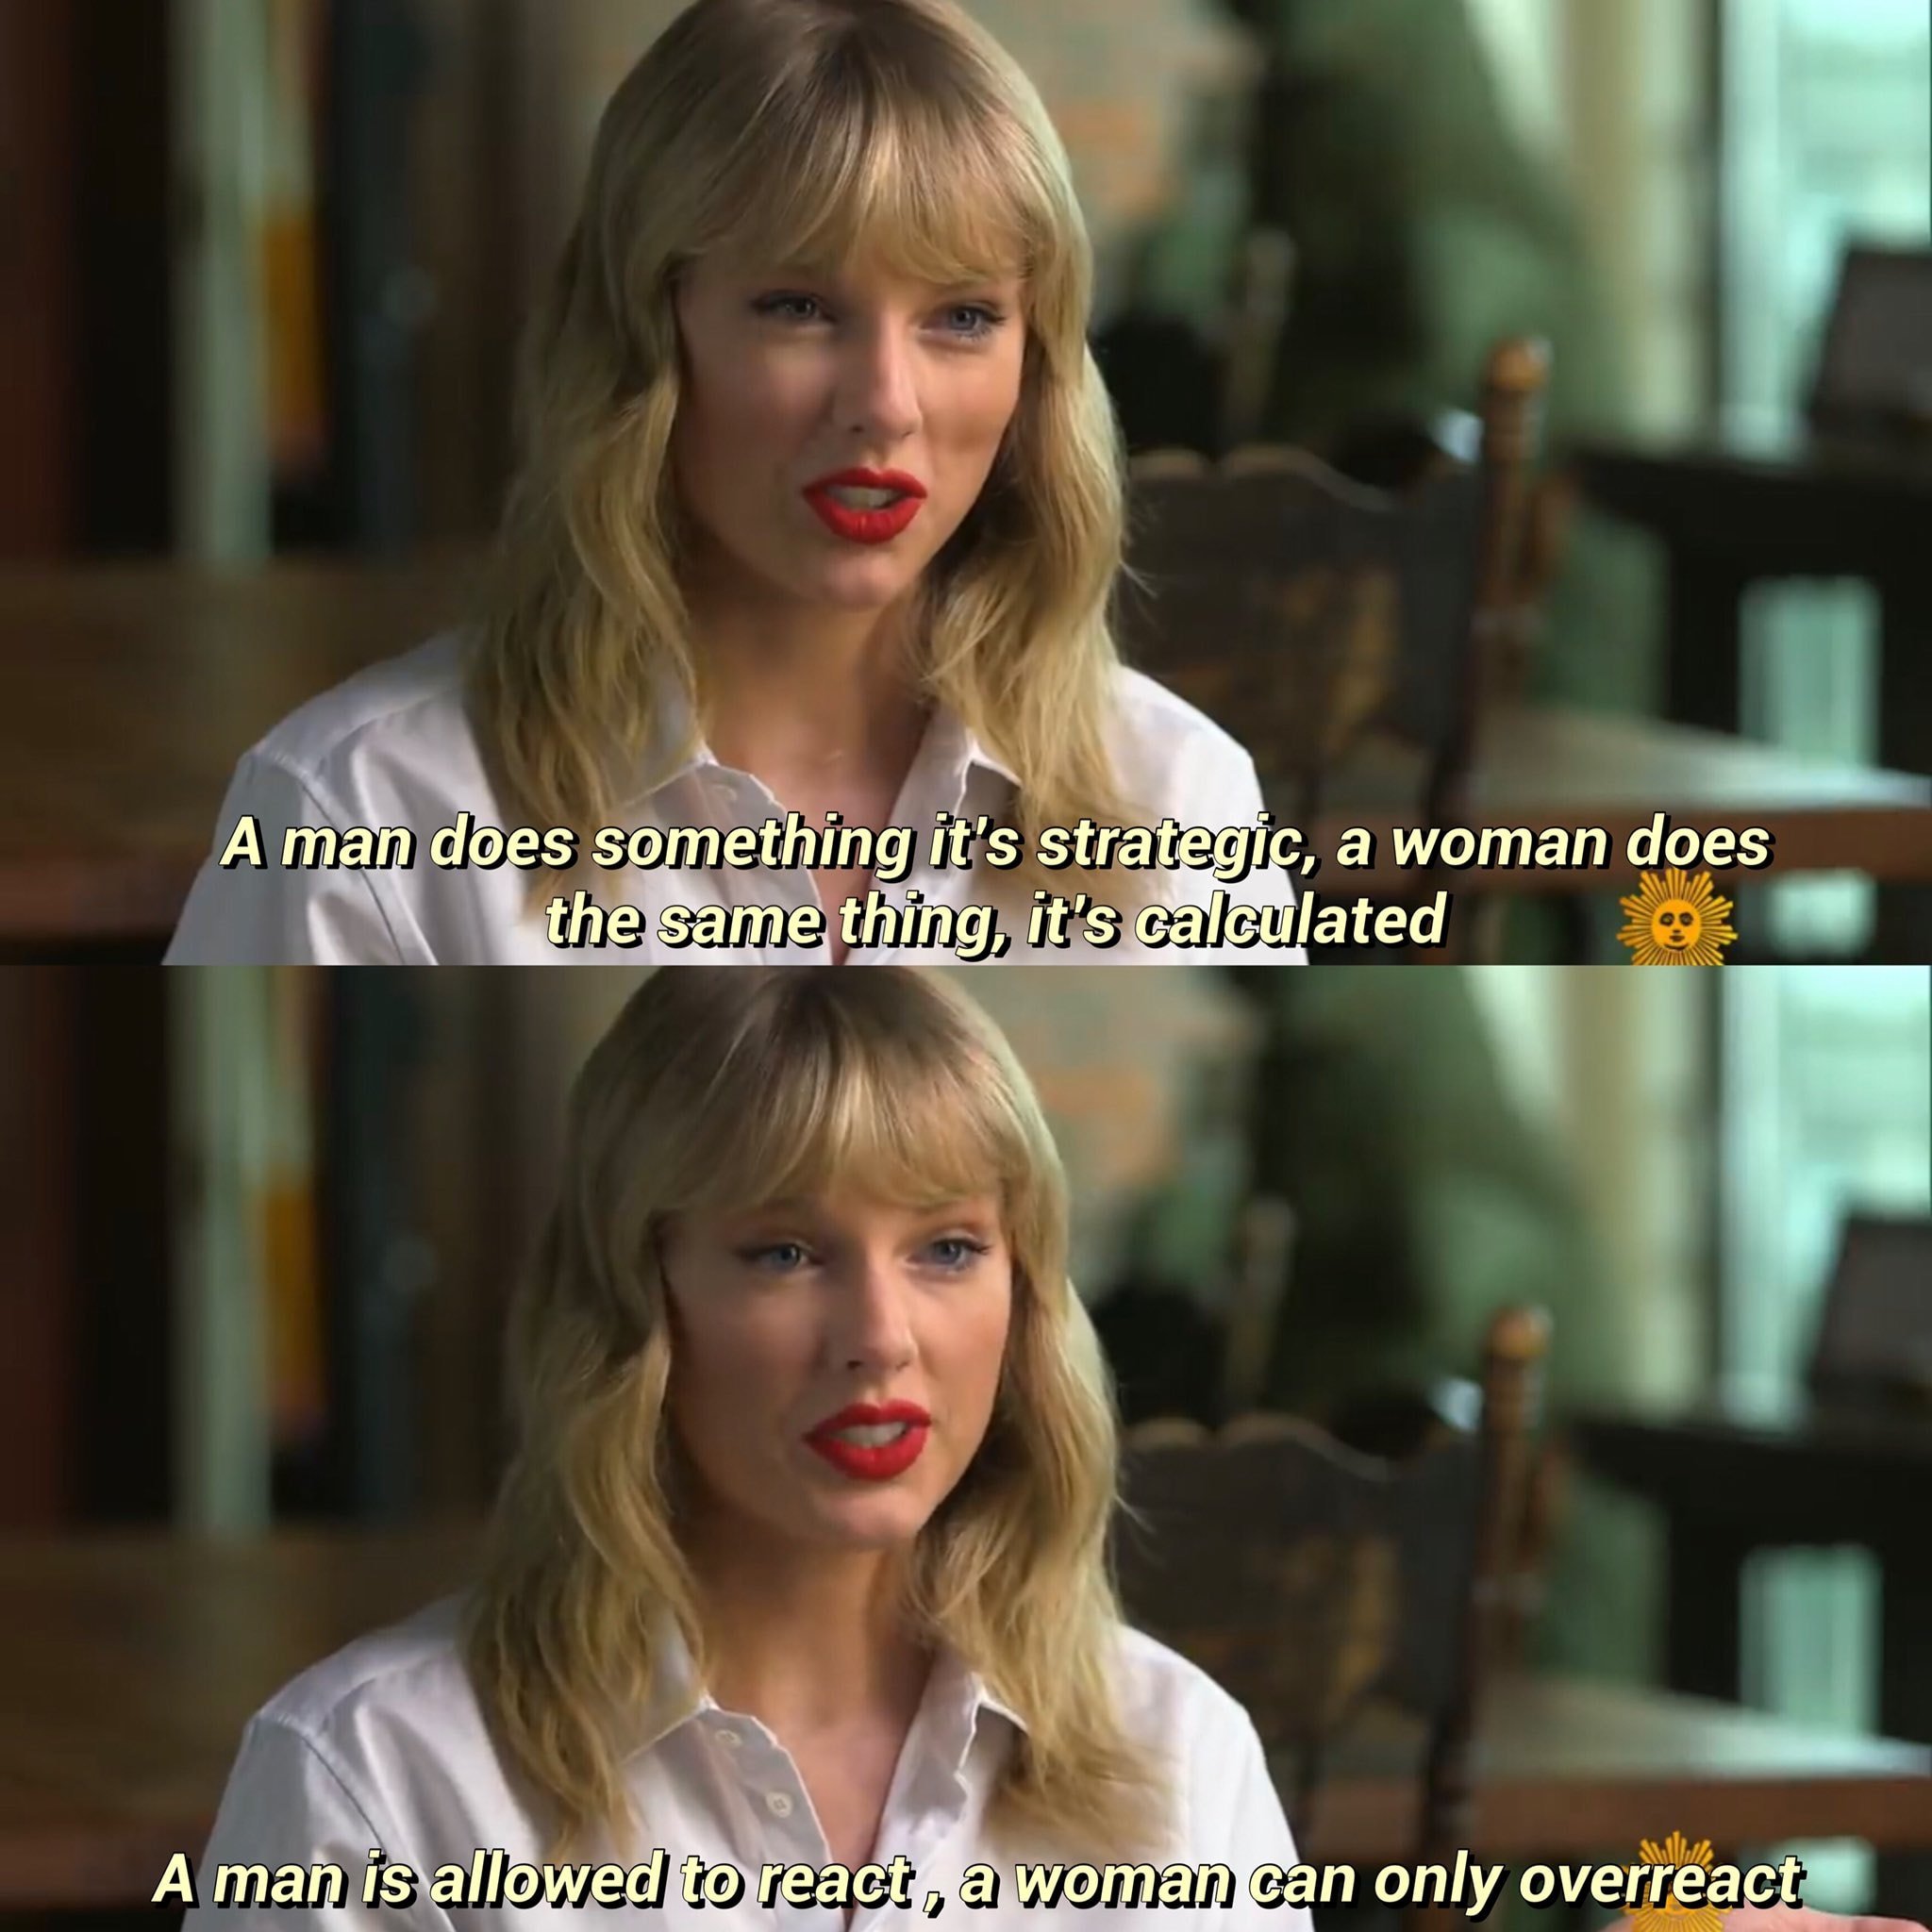 Câu nói hay về cuộc sống của Taylor Swift (Ảnh: Internet)